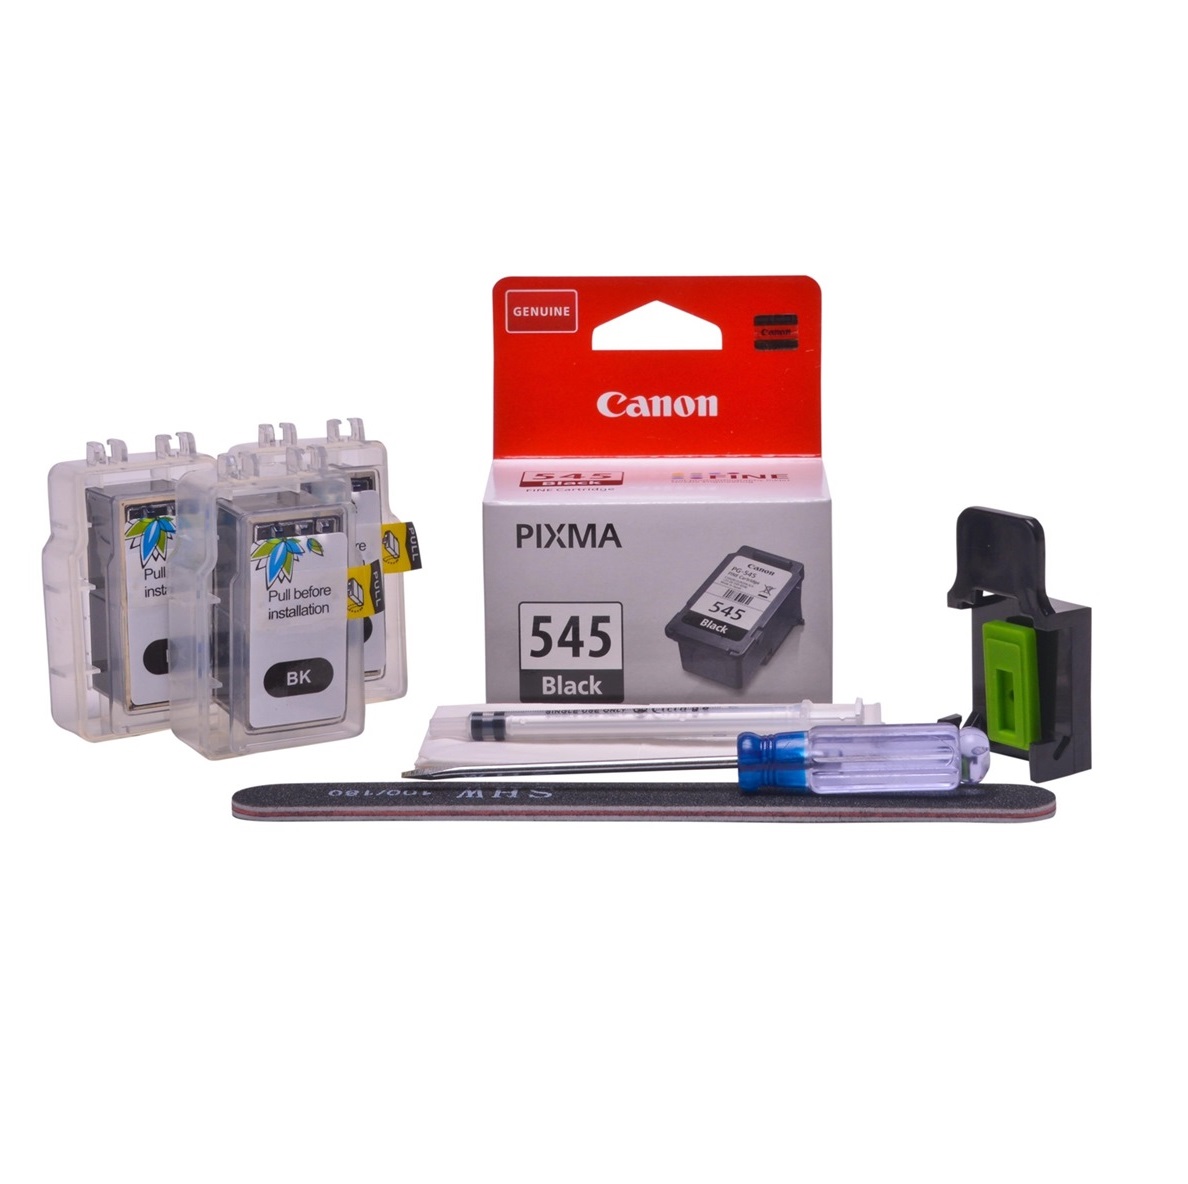 Cheap black refill pod pigment ink replaces Canon Pixma TR4650 - PG-545